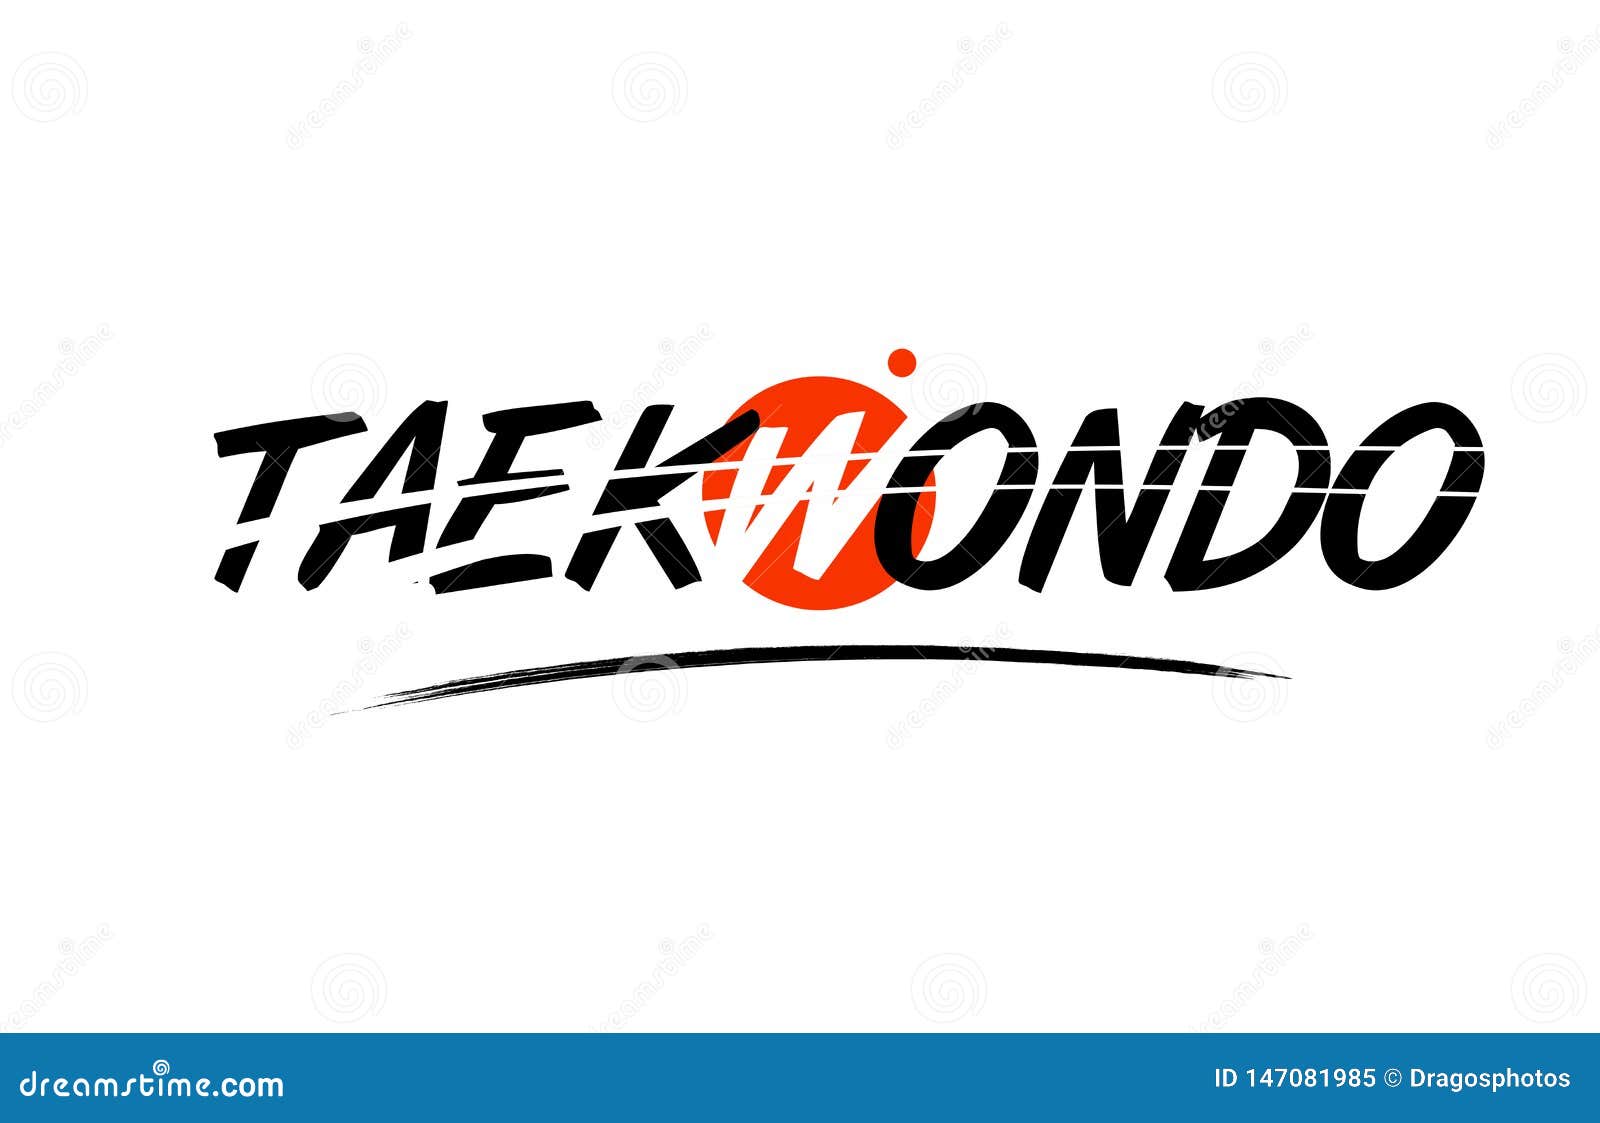 taekwondo word text logo icon with red circle 